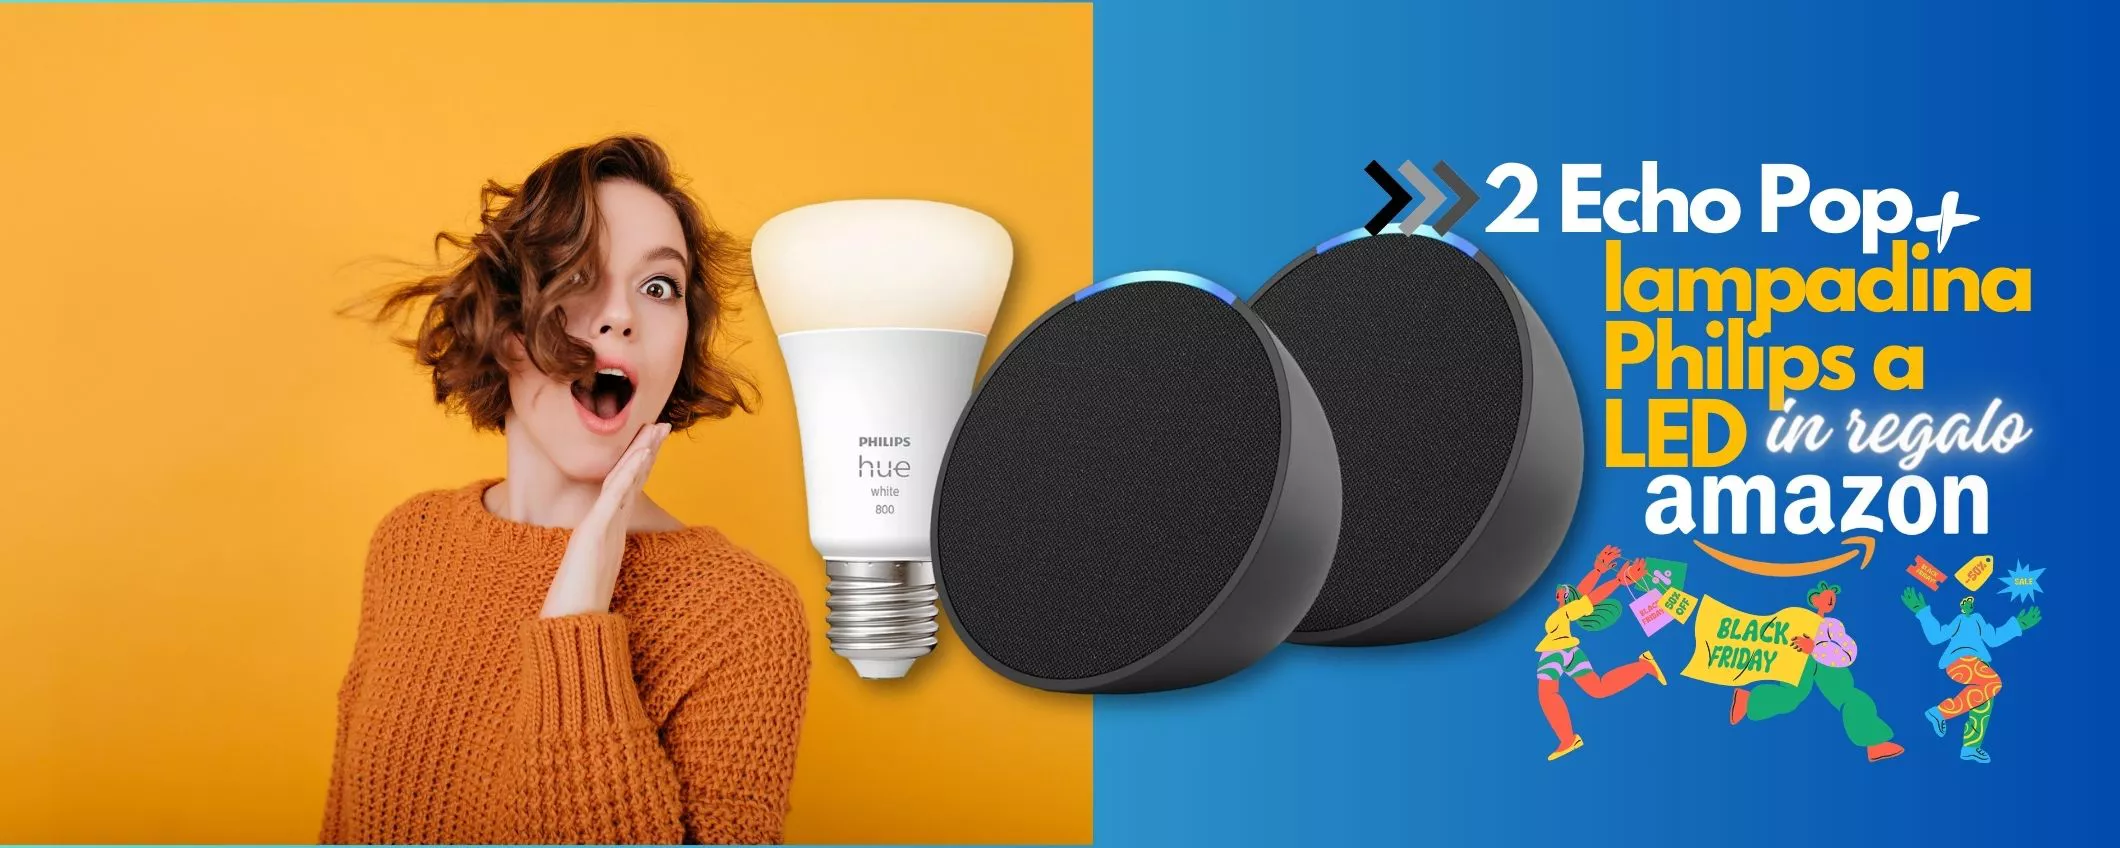 ESCLUSIVA Black Friday Amazon: Echo Pop + lampadina LED Philips con Alexa a 39€